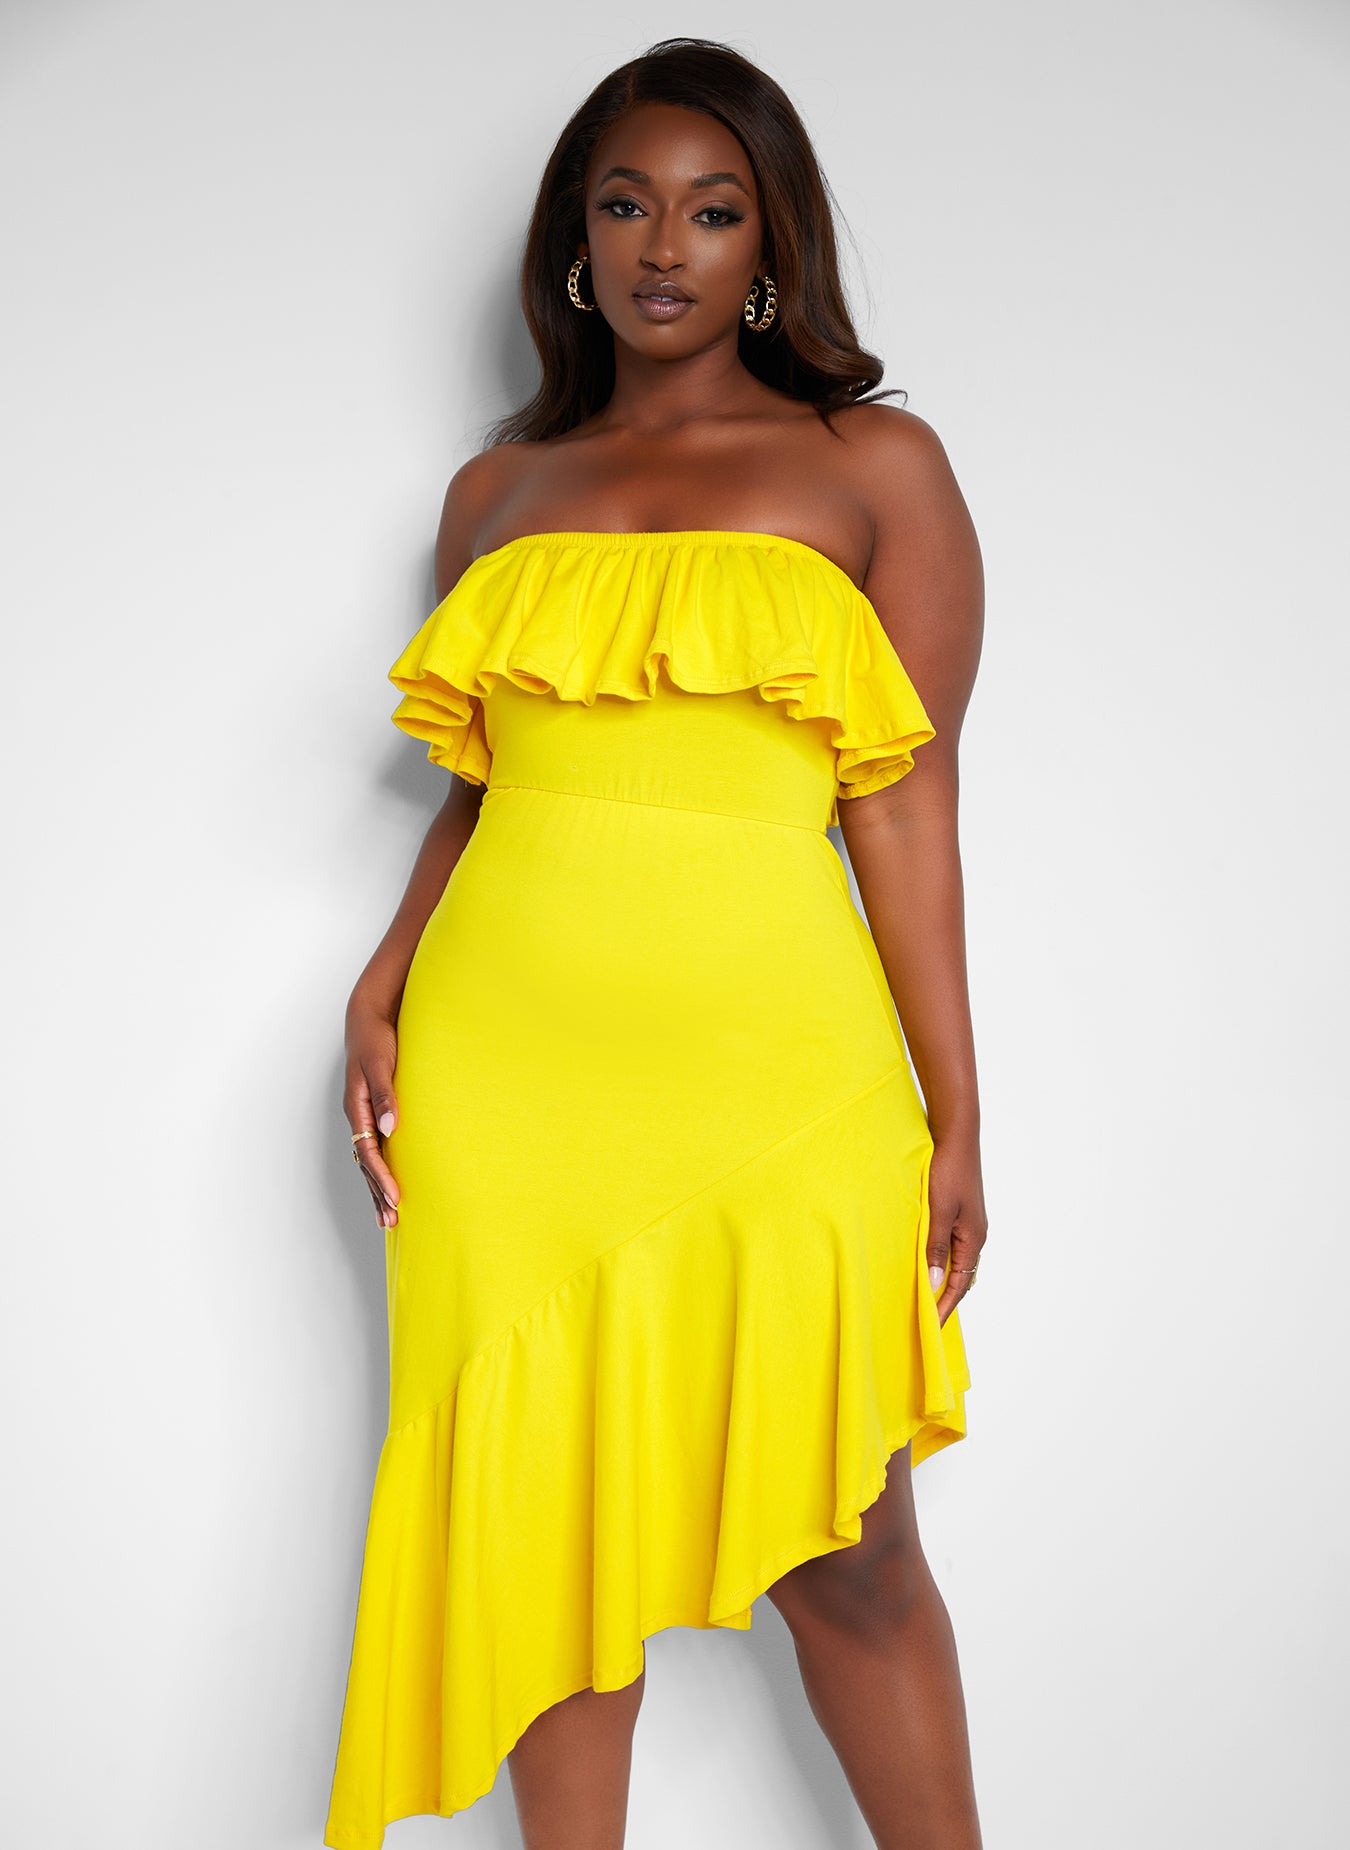 Ray of Sunshine Ruffled Sleeveless Dress - Yellow